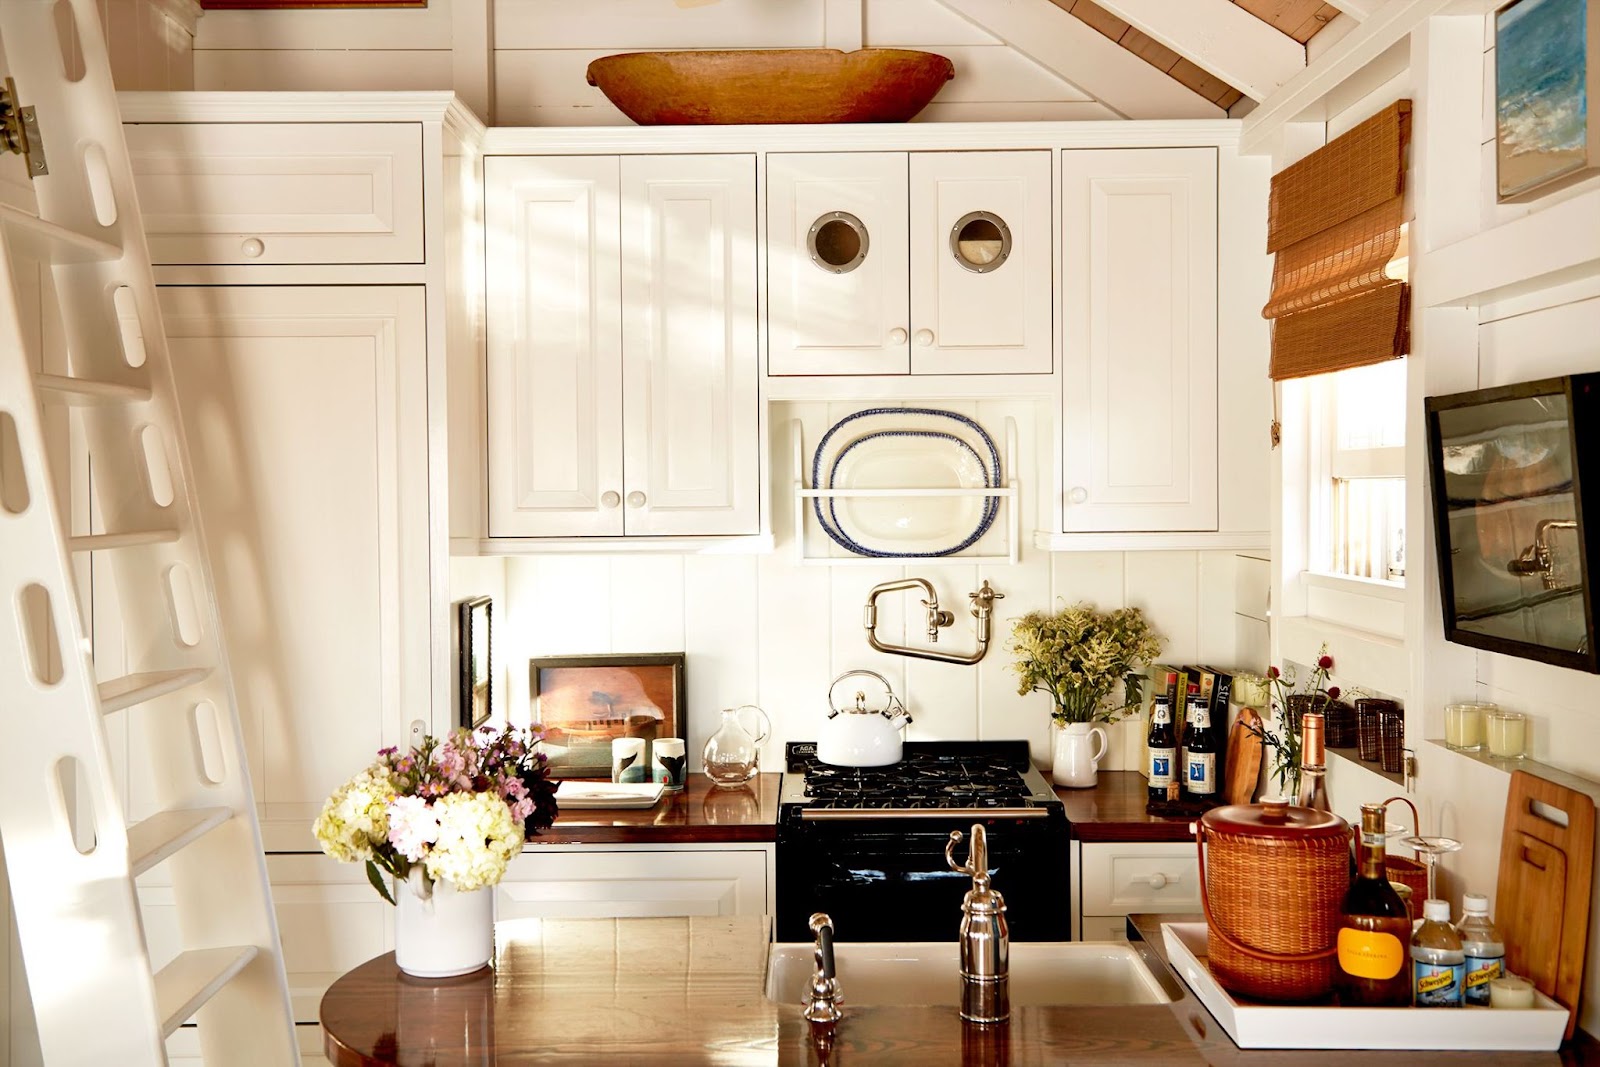 interior design for small spaces kitchen